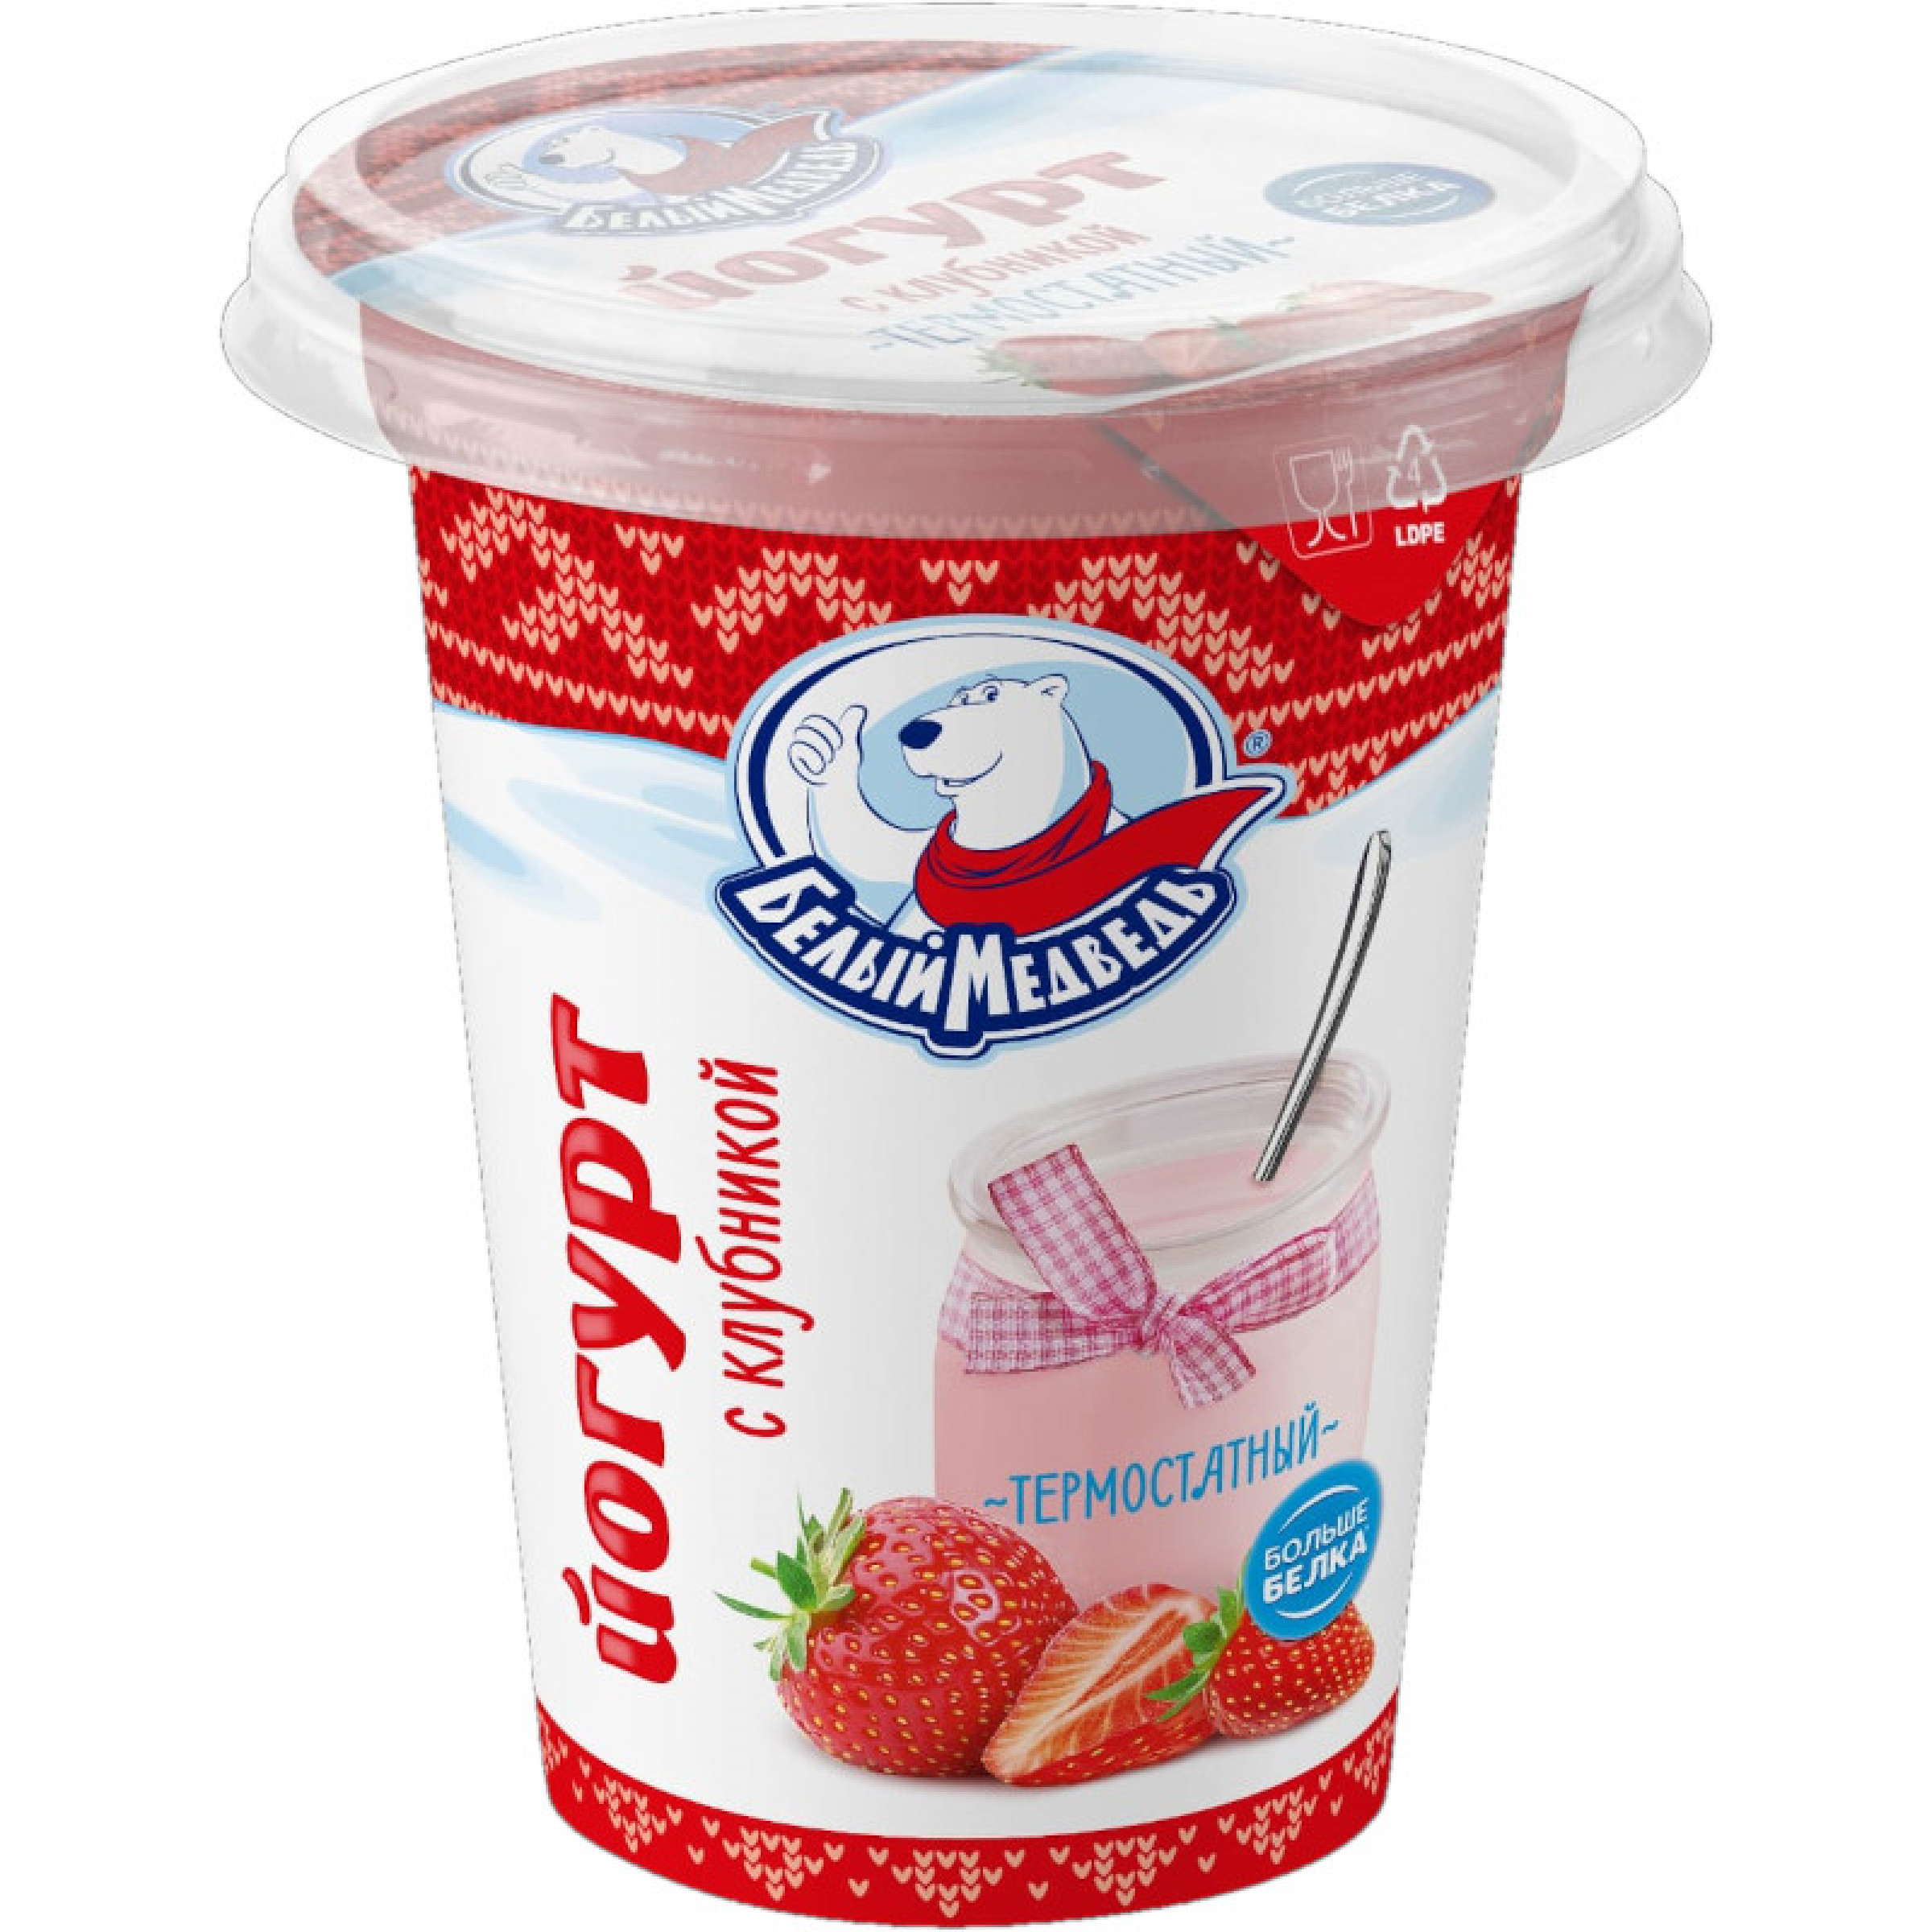 Термостатный йогурт Белый Медведь Клубника 3,2 % 290 г